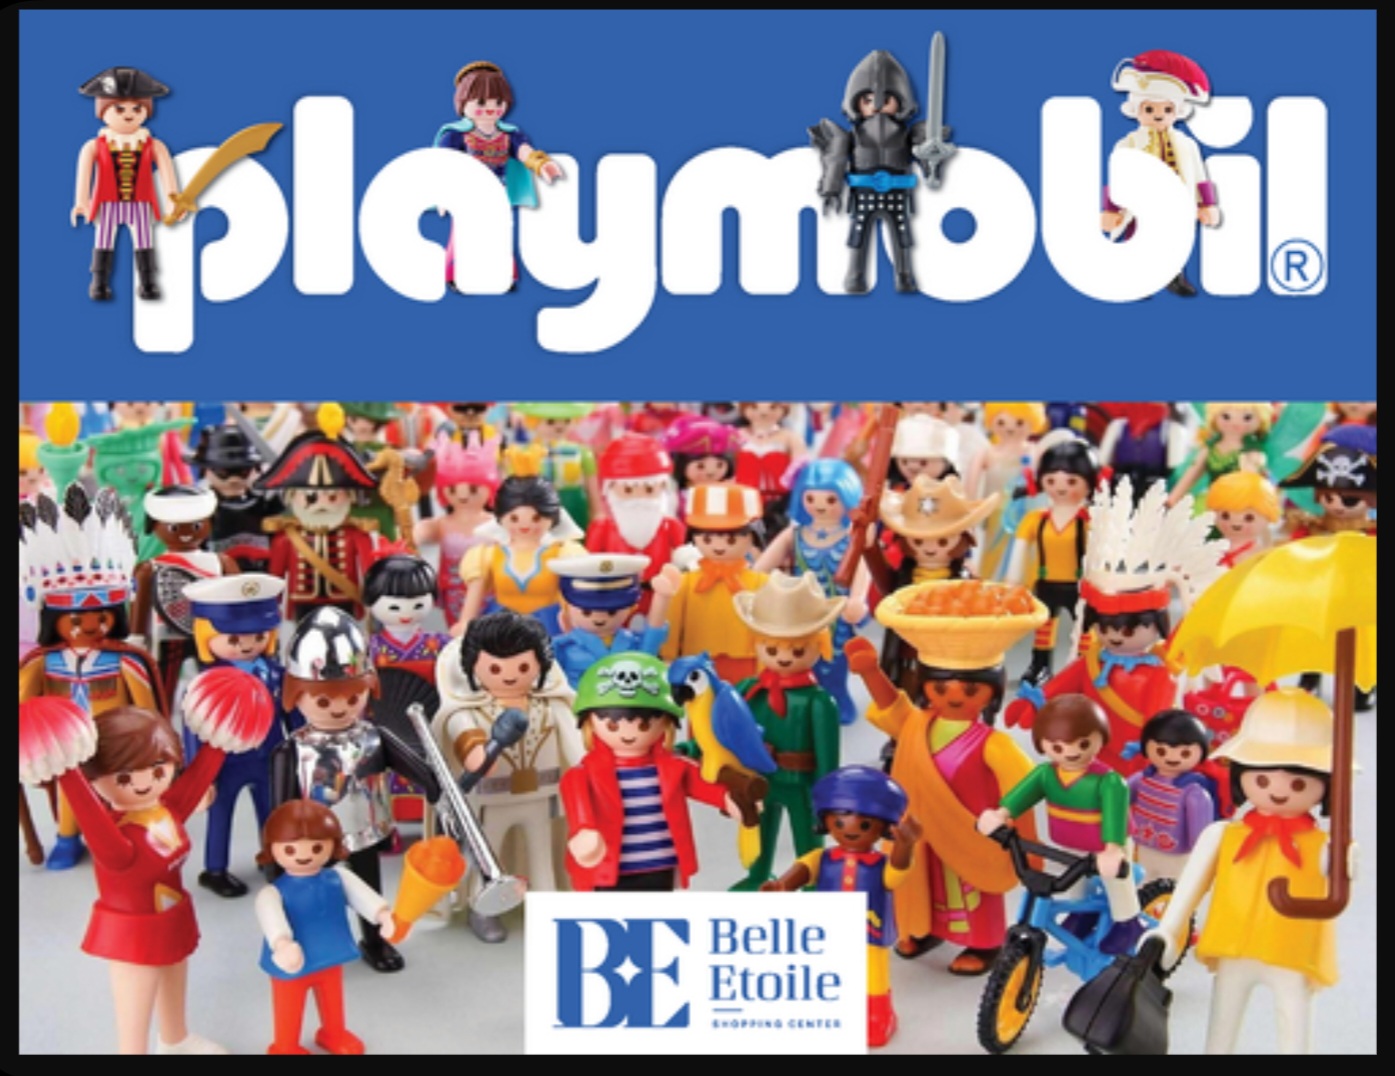 Playmobil exhibition